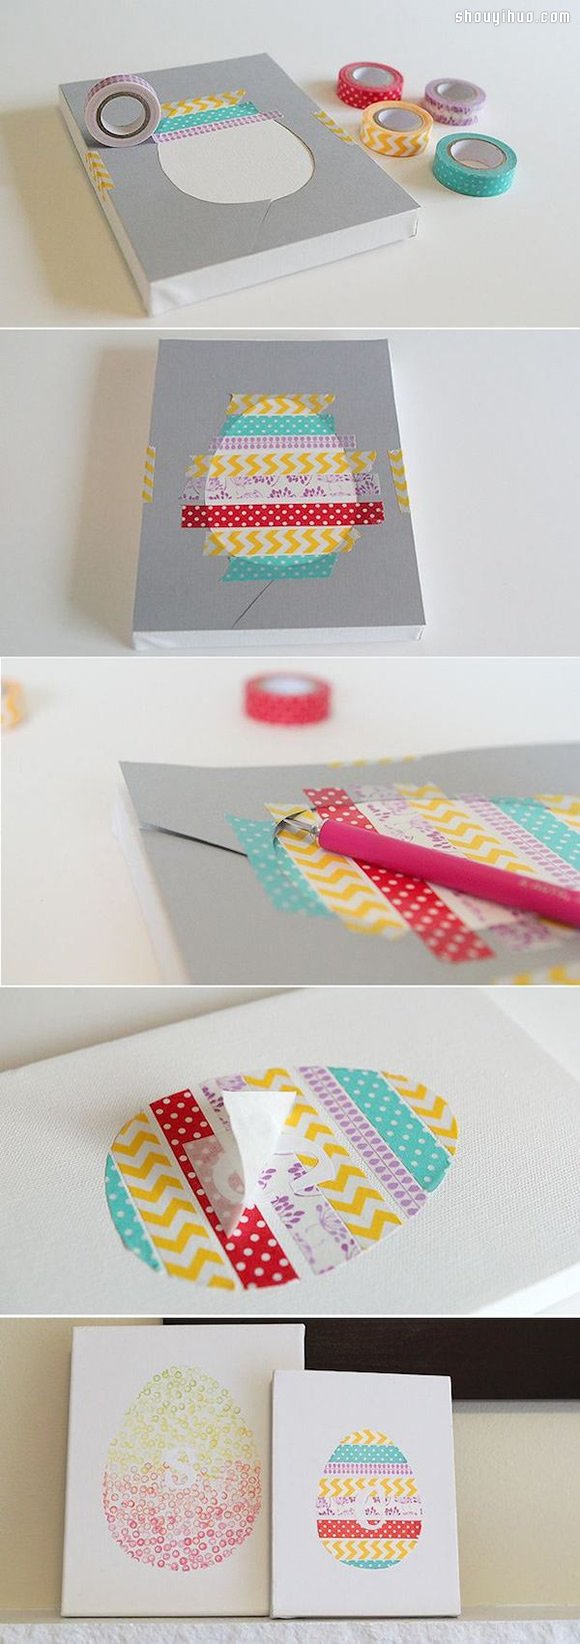 纸胶带创意DIY 看完你也会变热血纸胶带迷